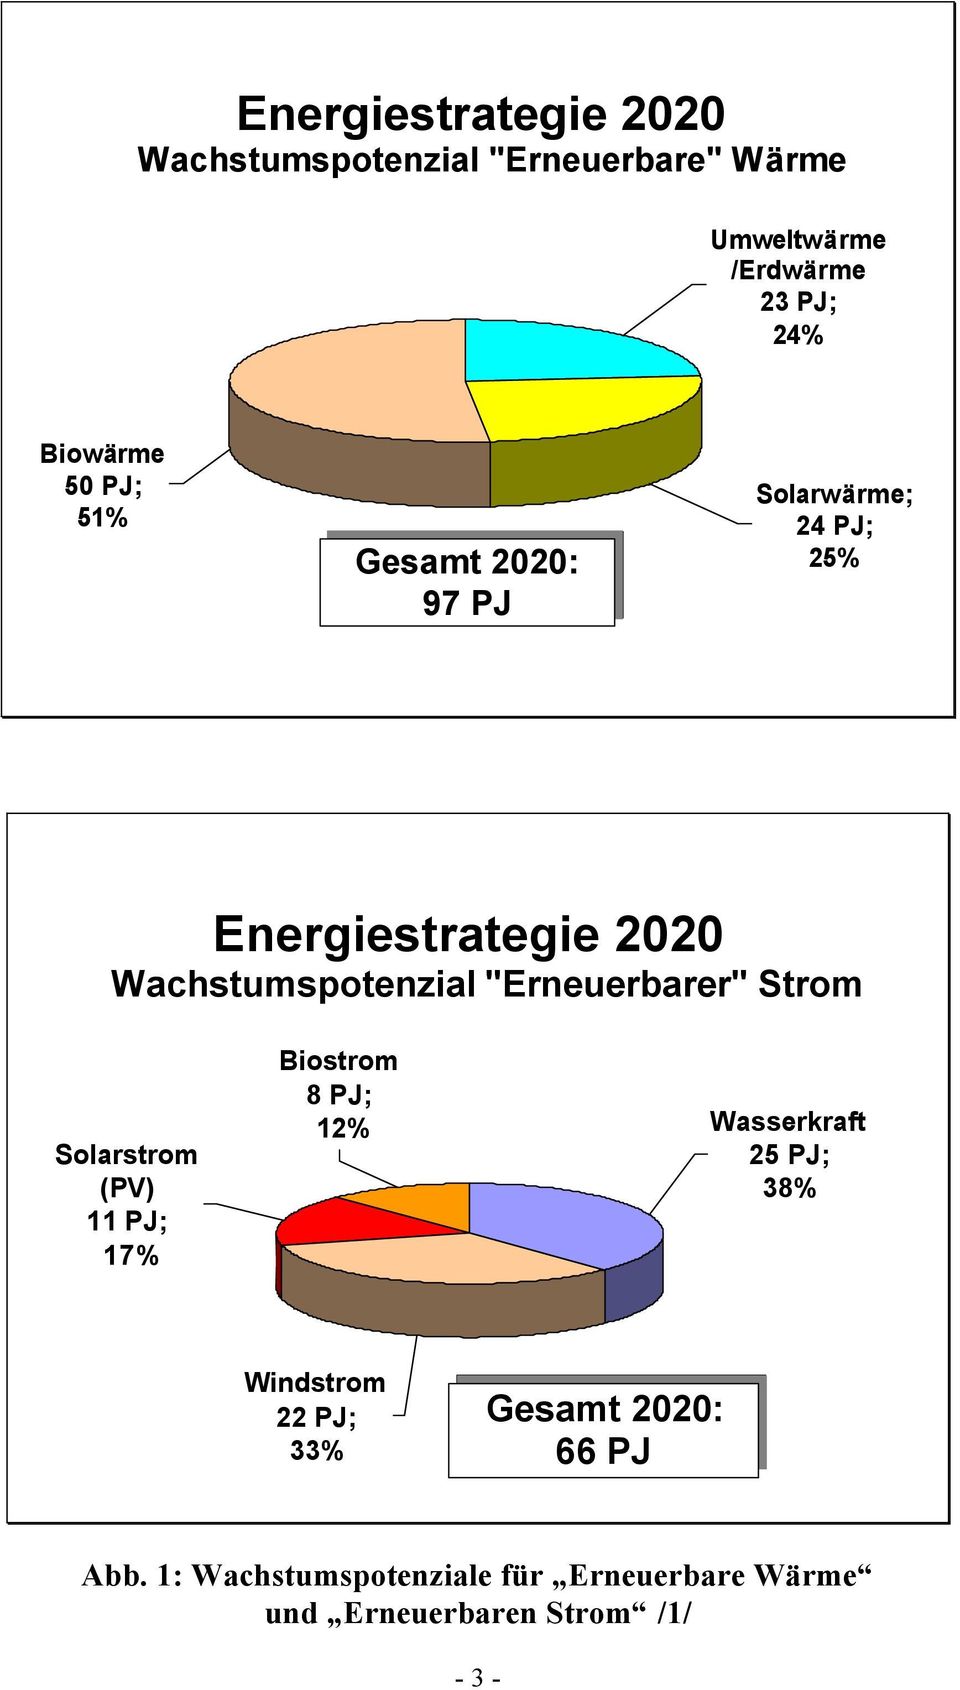 Strom Solarstrom (PV) 11 PJ; 17% Biostrom 8 PJ; 12% Wasserkraft 2 PJ; 38% Windstrom 22 PJ; 33%